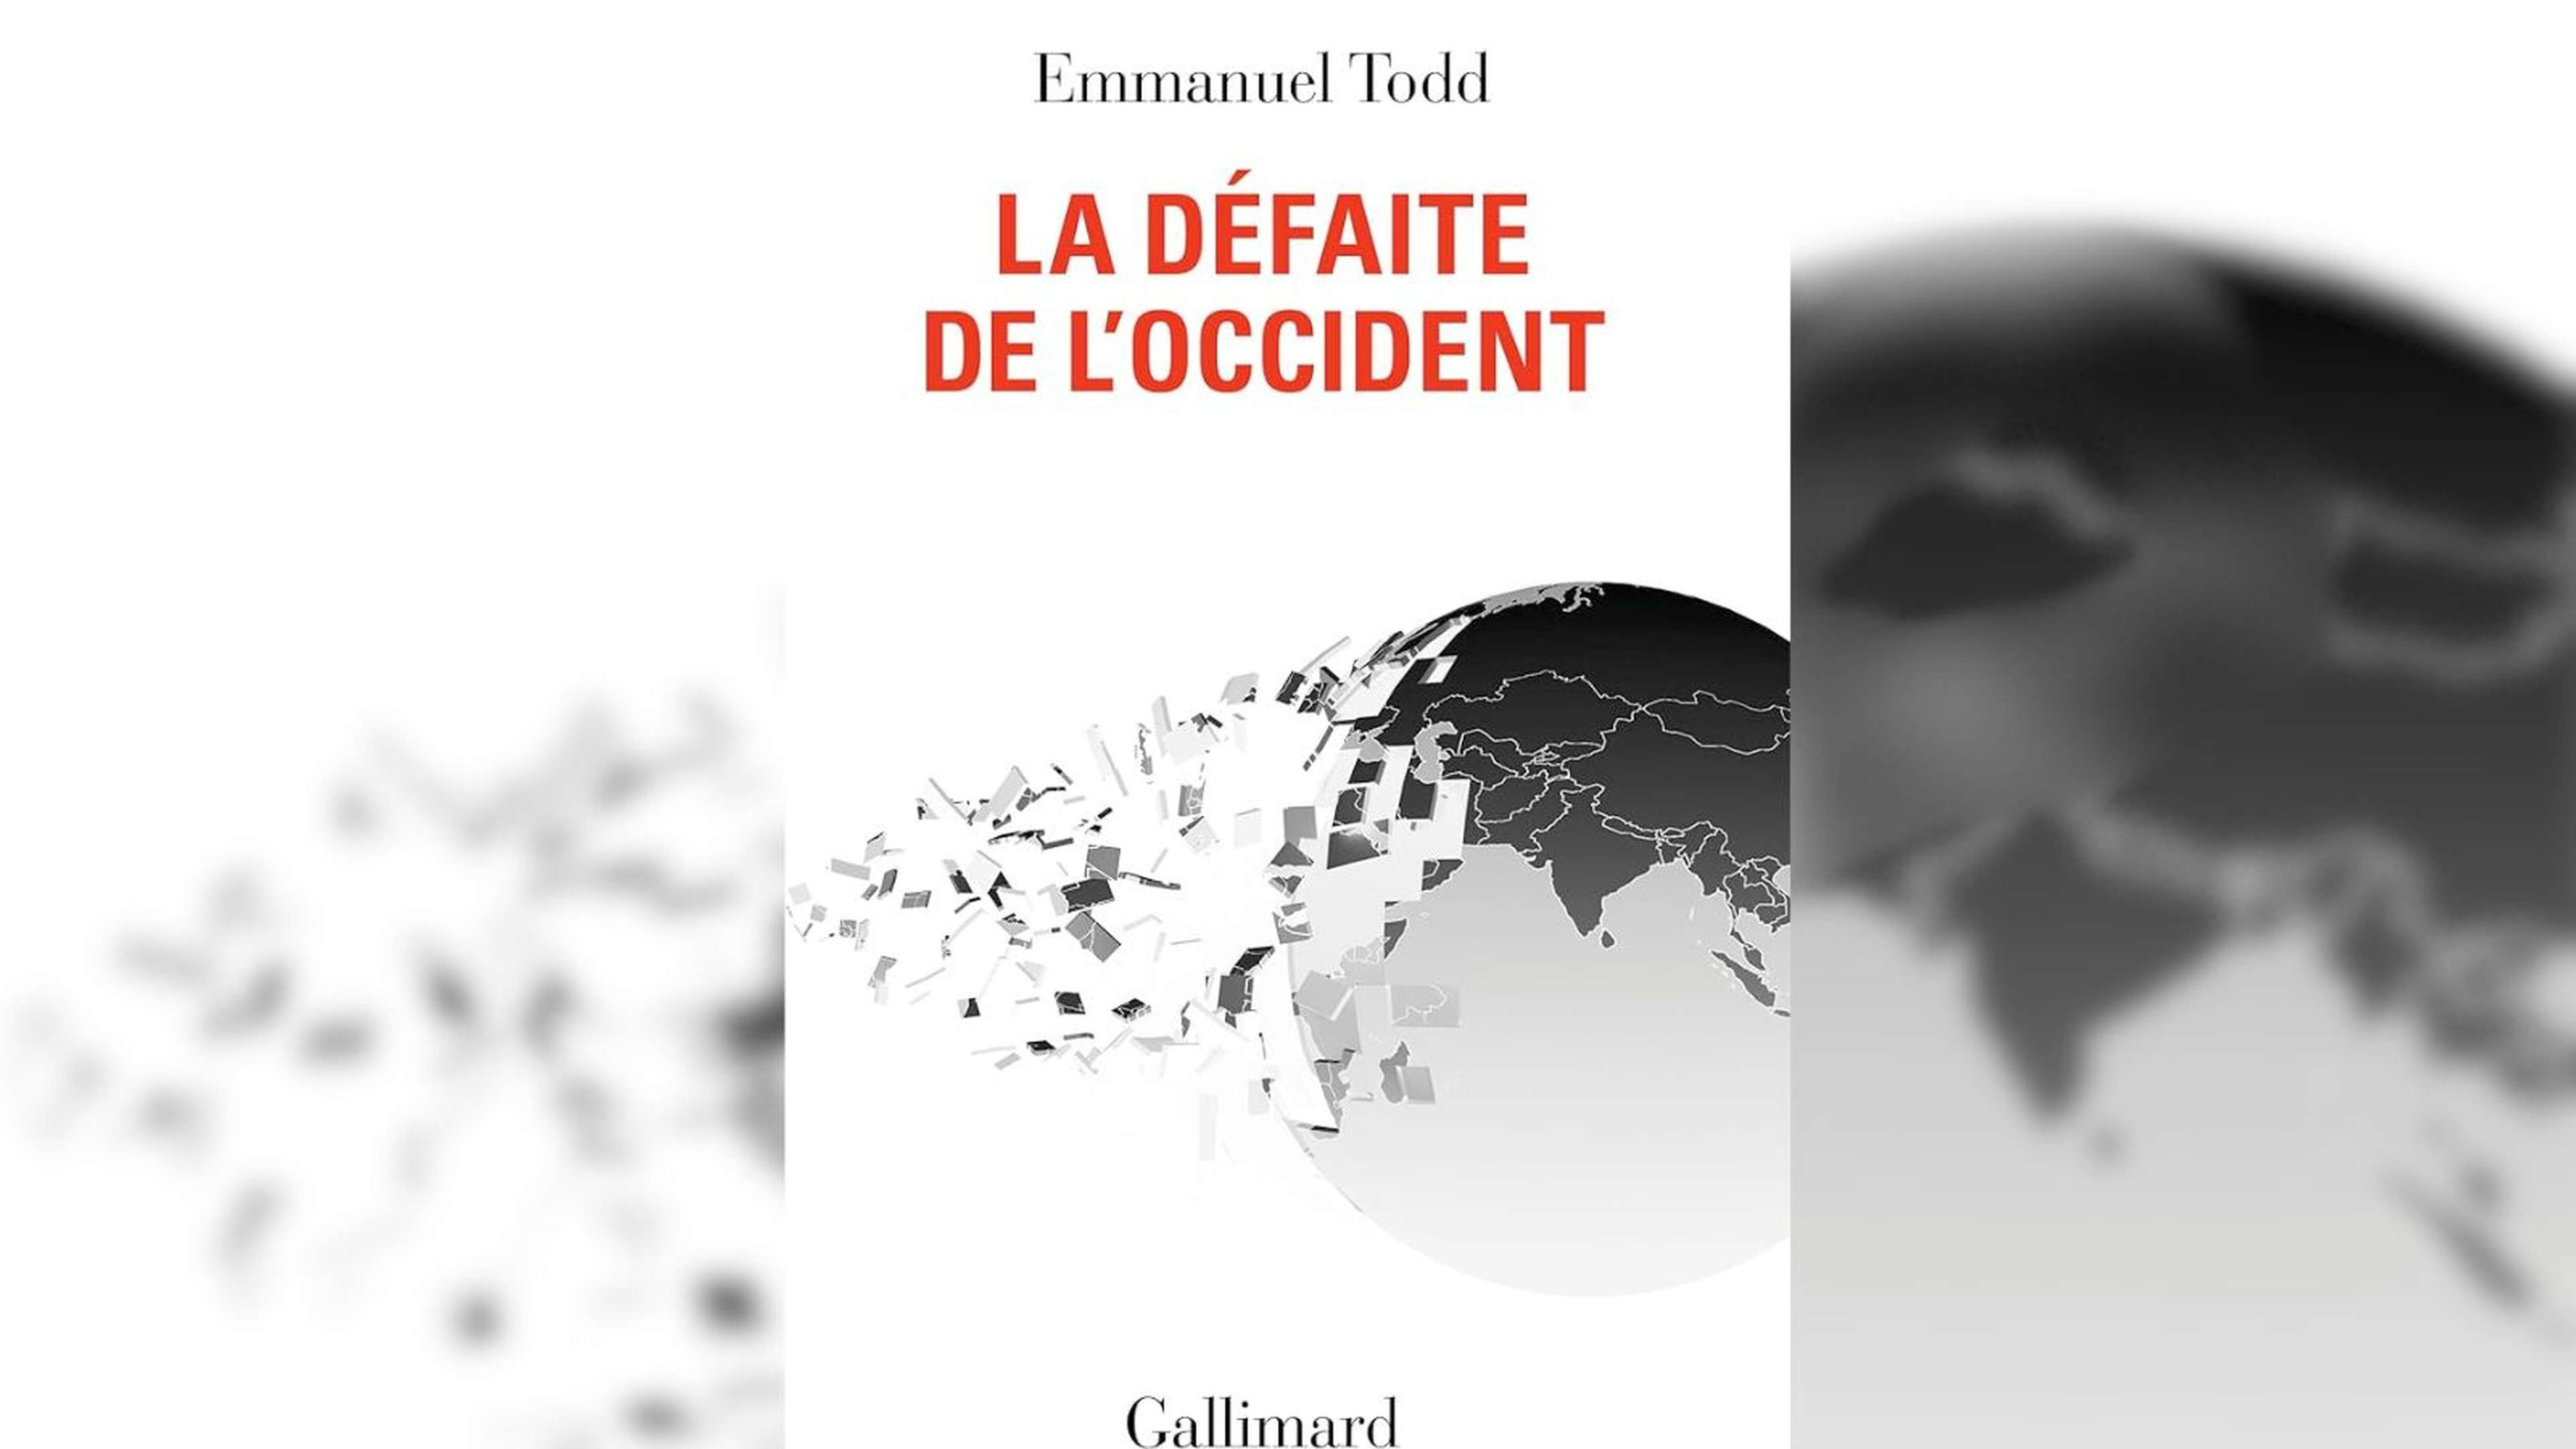 Emmanuel-todd-la-defaite-de-l-occident